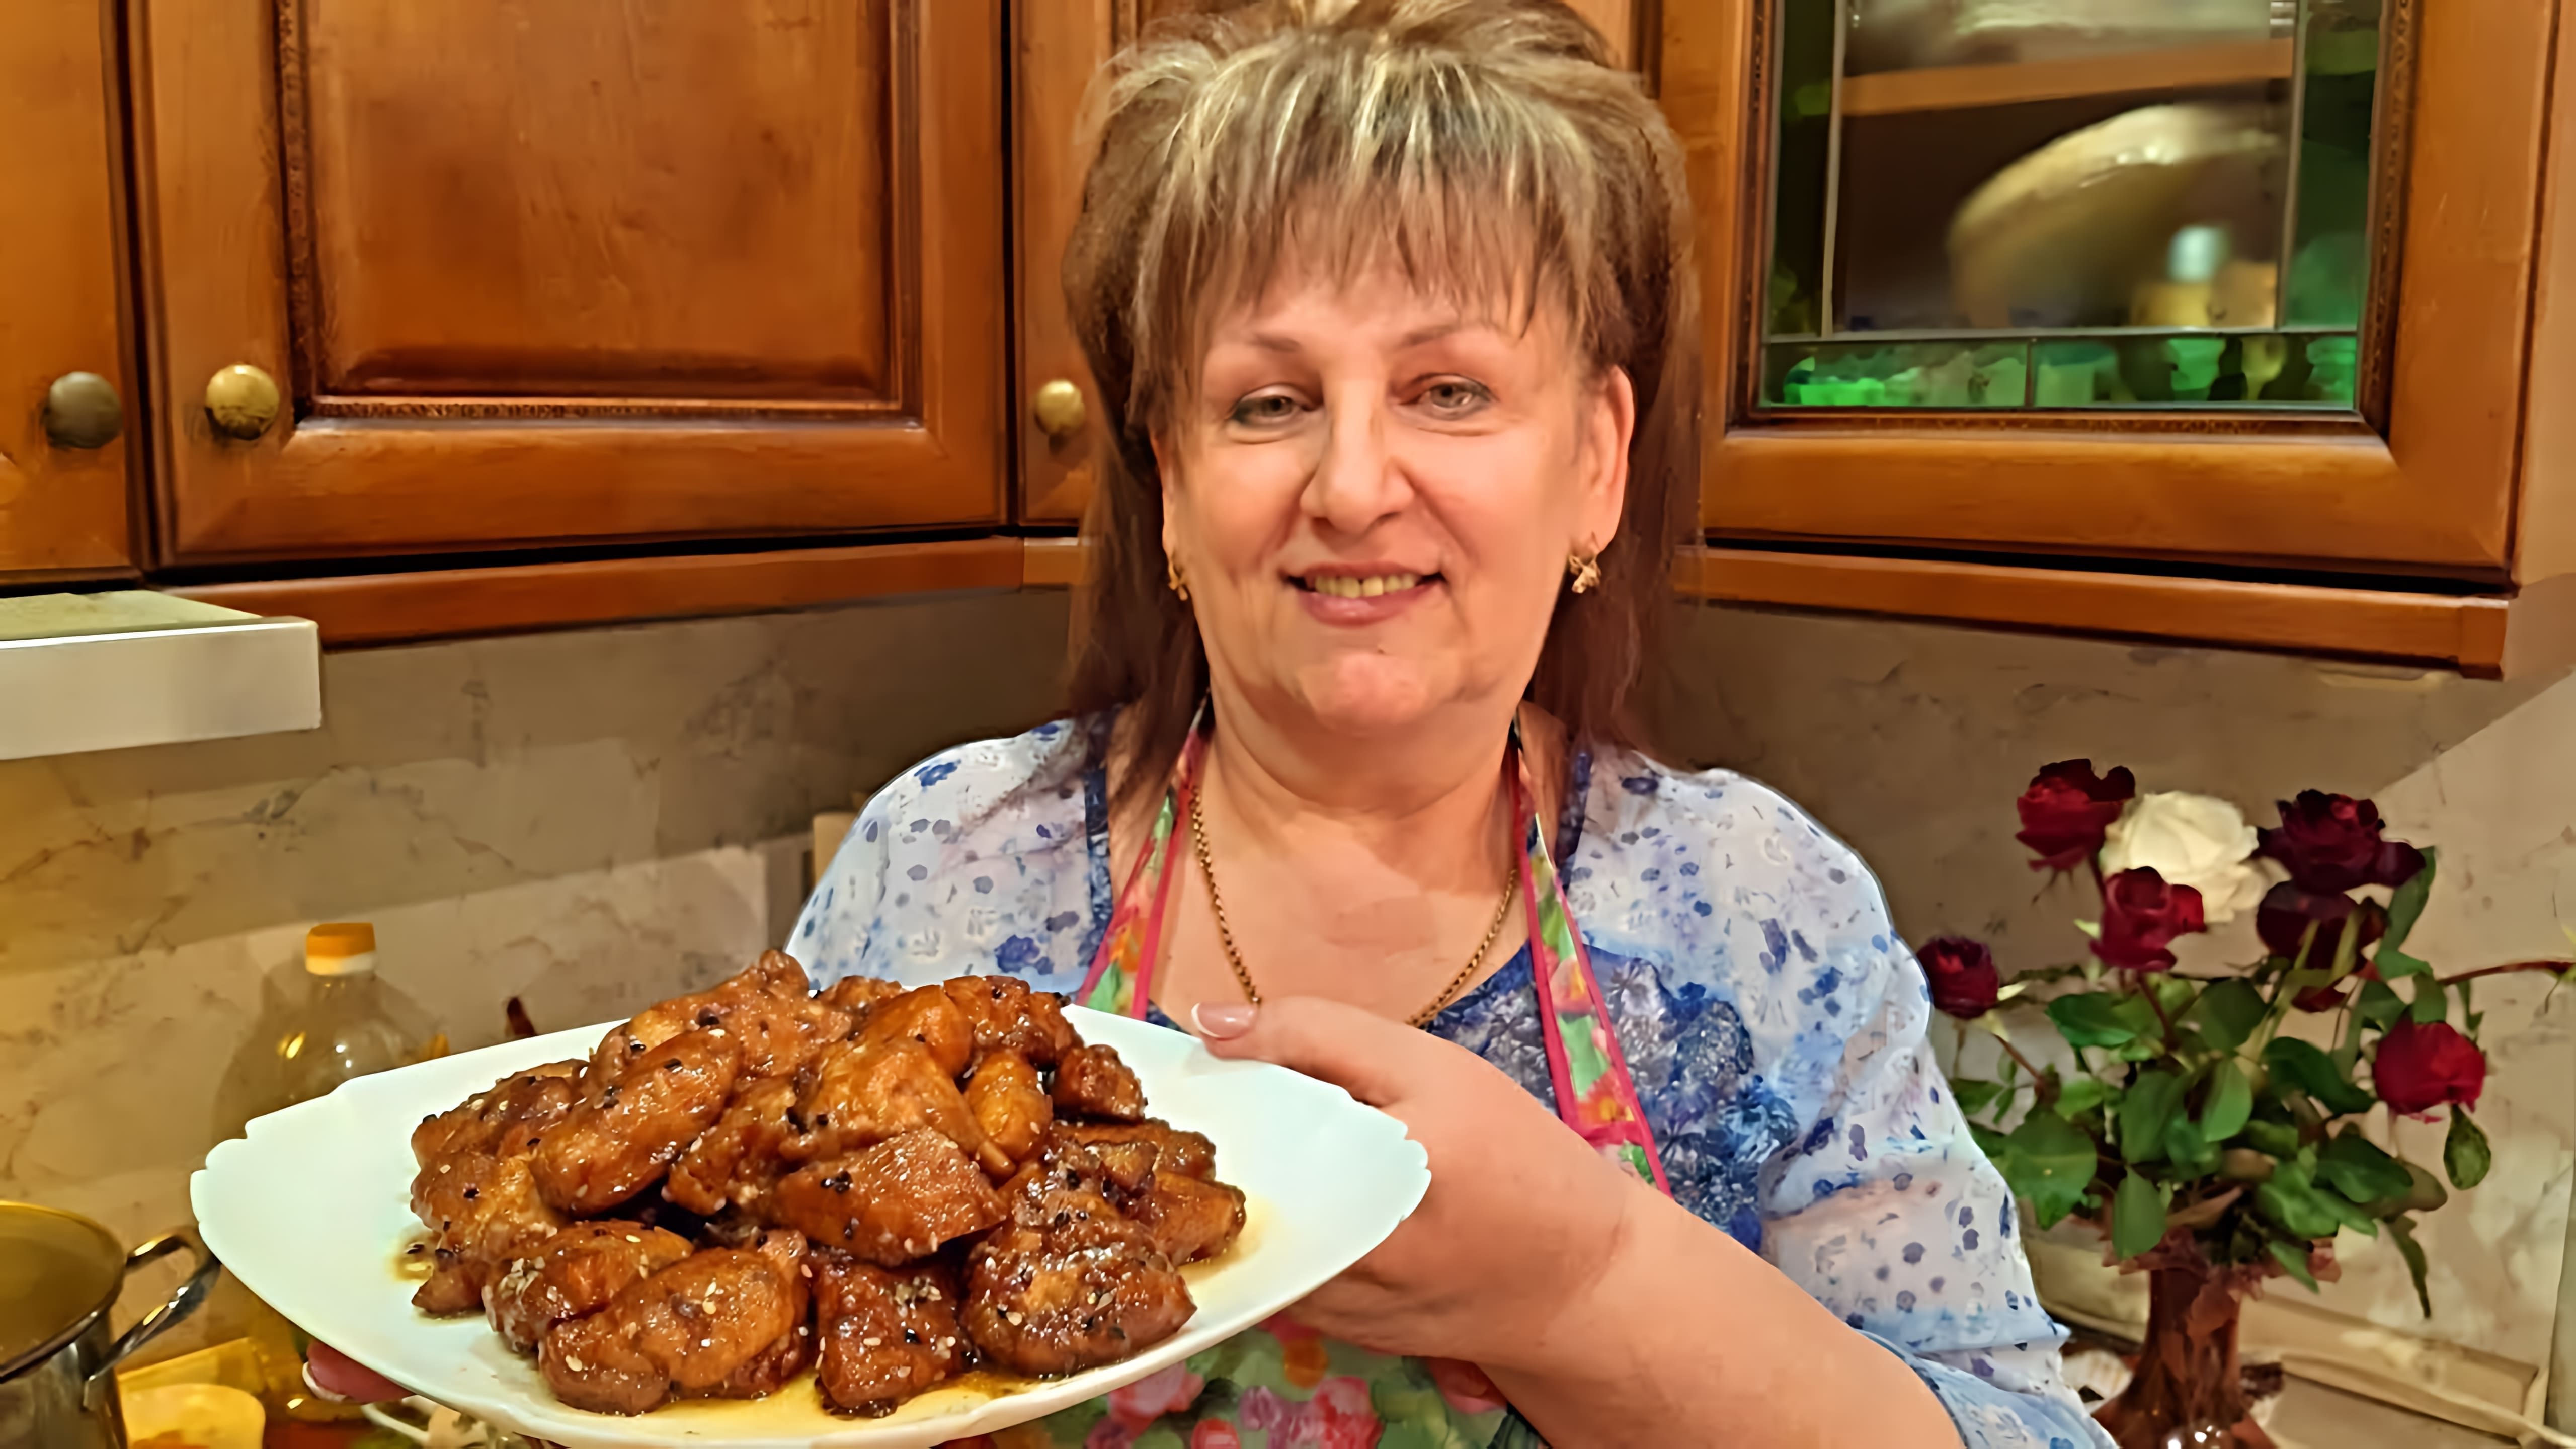 В этом видео демонстрируется рецепт приготовления куриного филе с использованием соды и крахмала